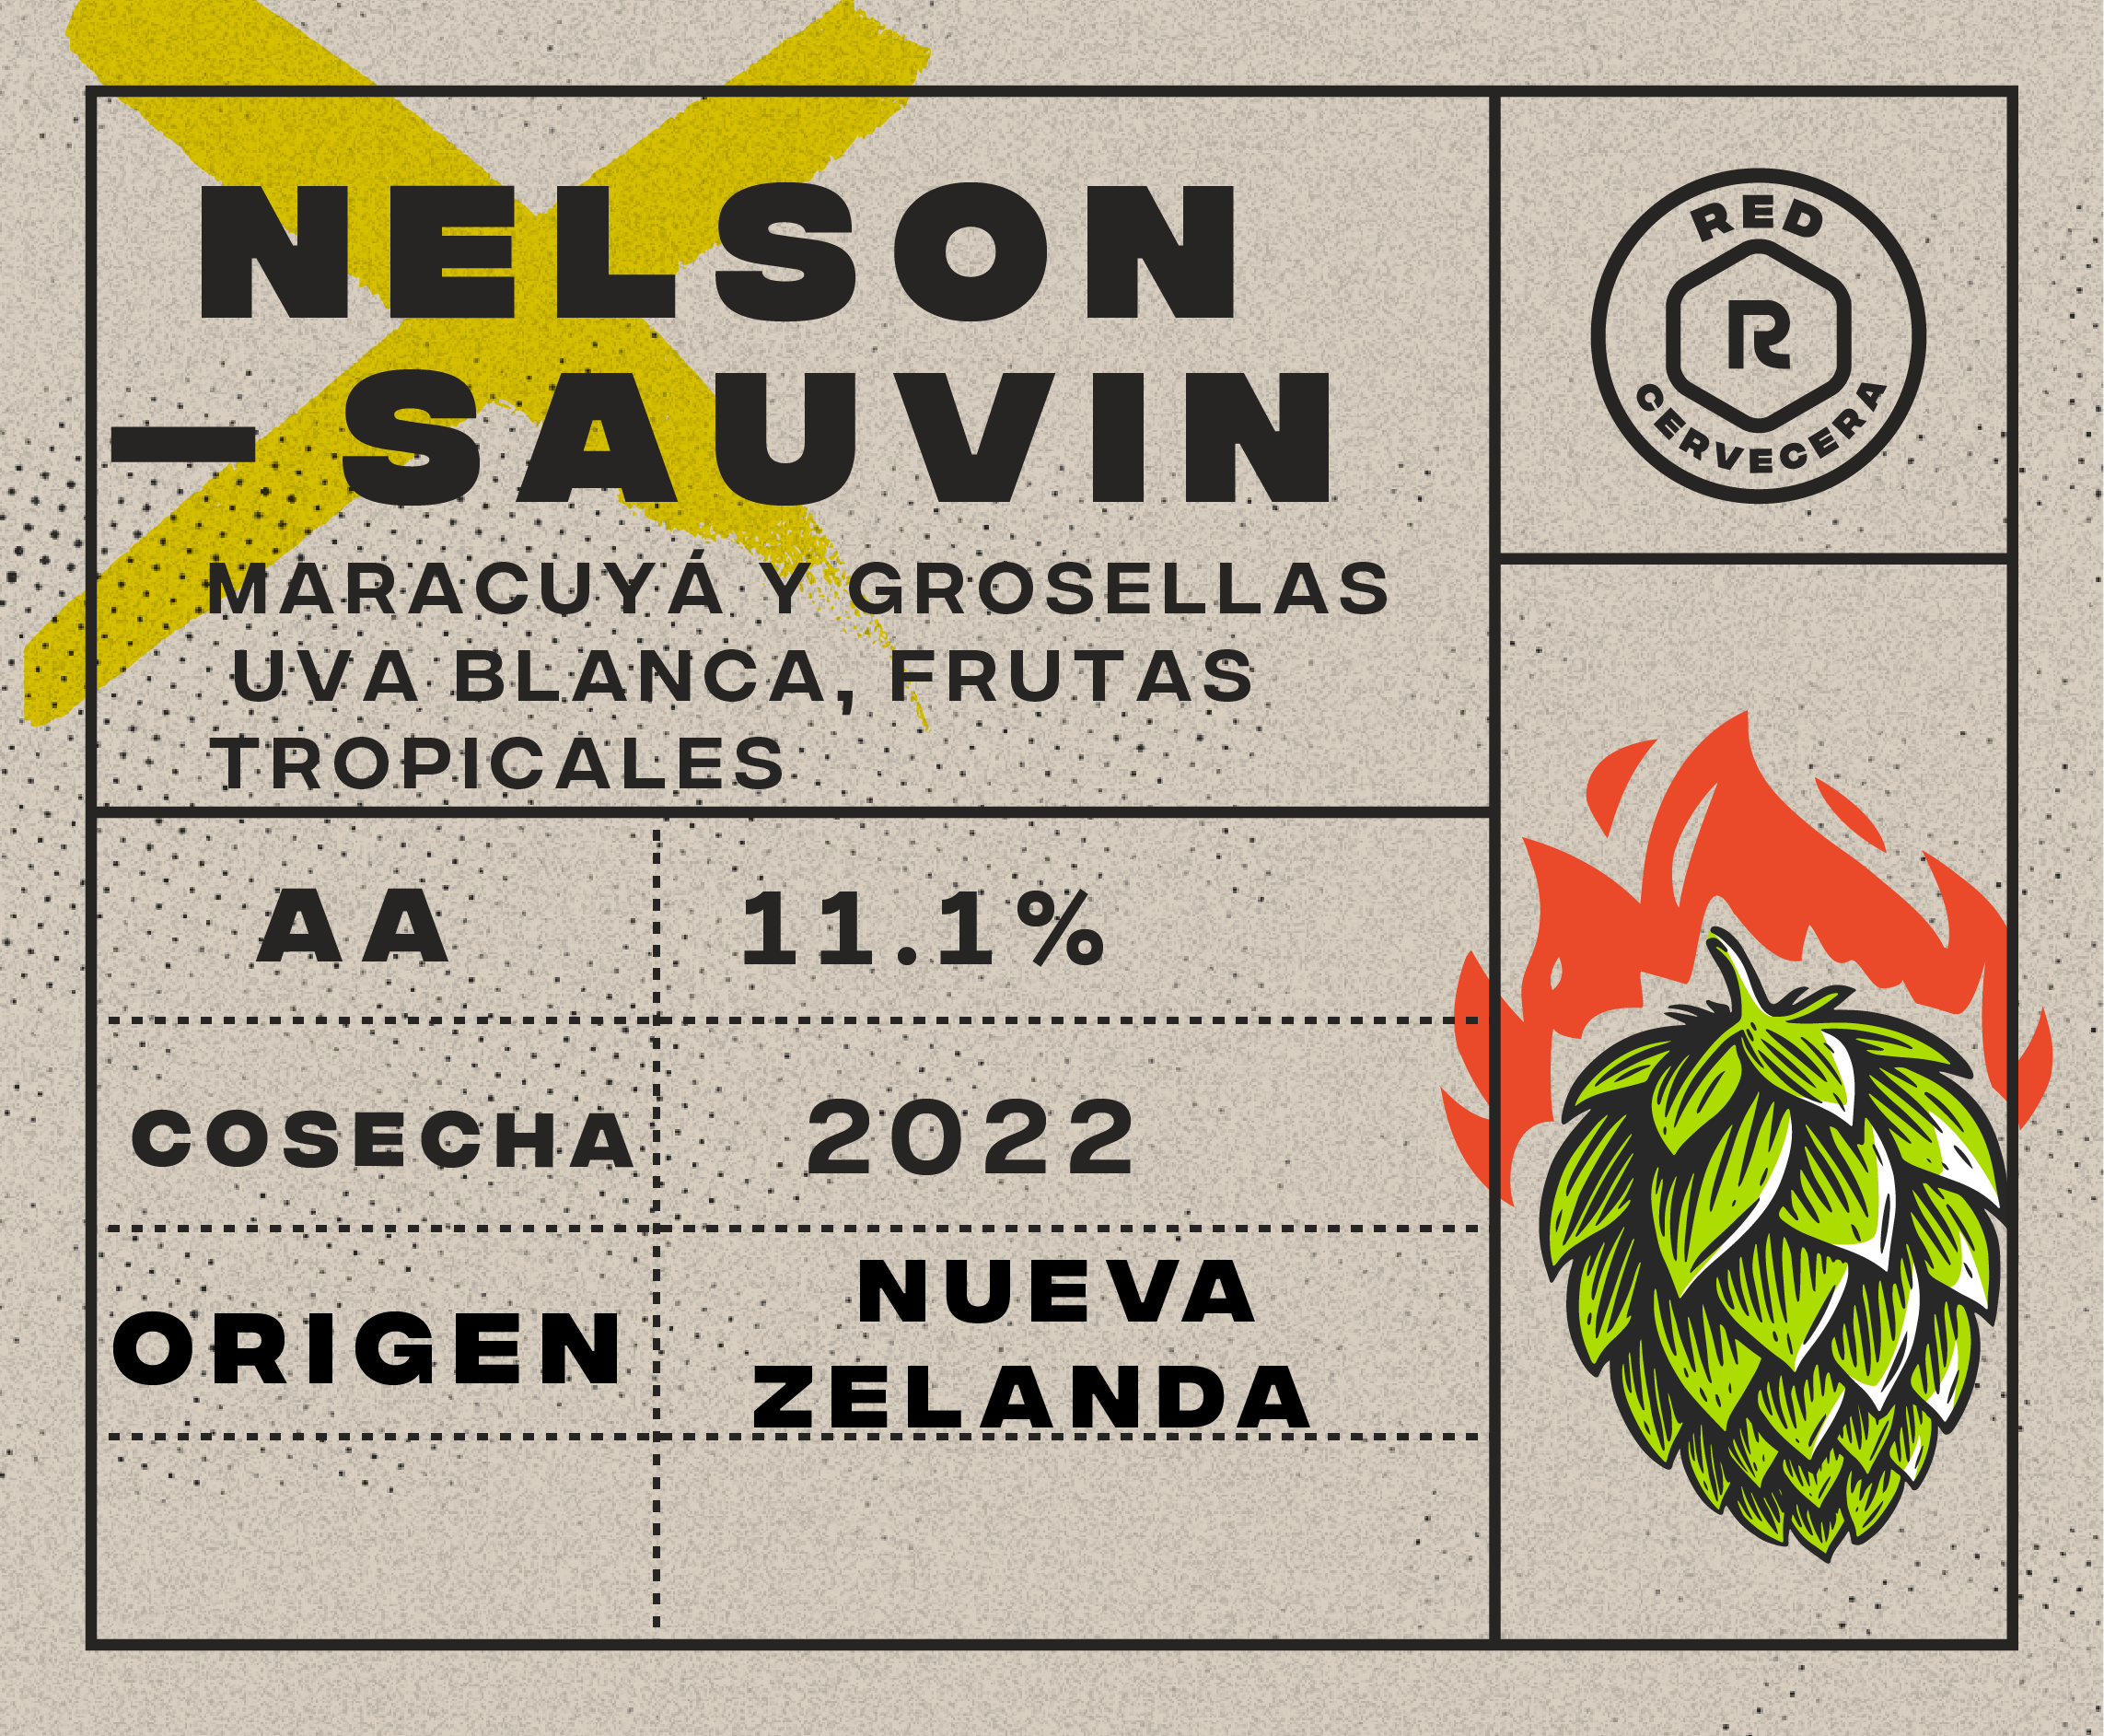 Nelson Sauvin 11.1%AA (1g.)